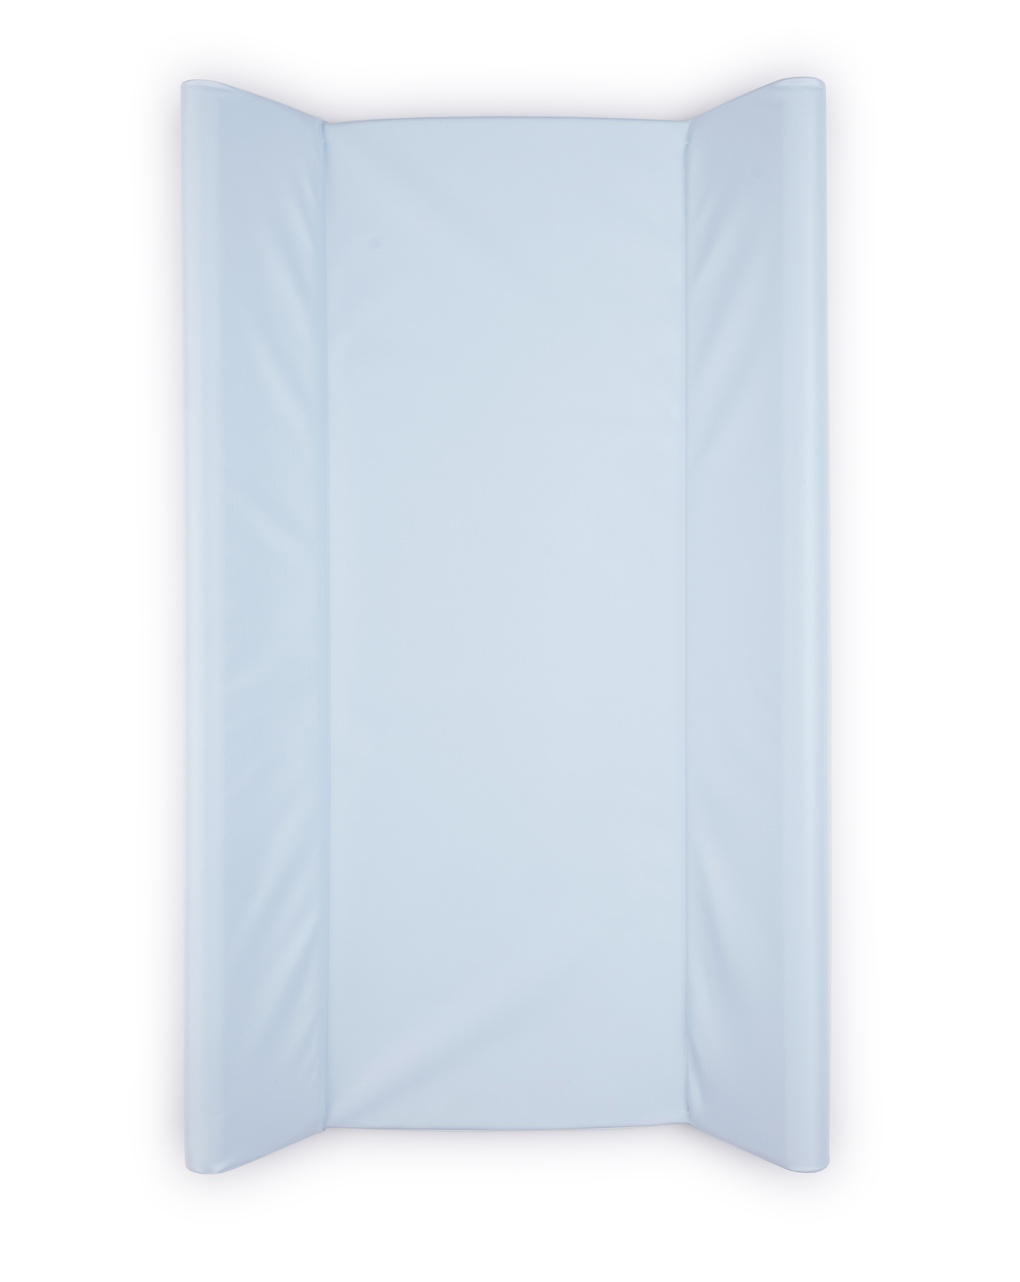 Materassino fasciatoio morbido azzurro pastello 50x80x9cm - giordani - Giordani